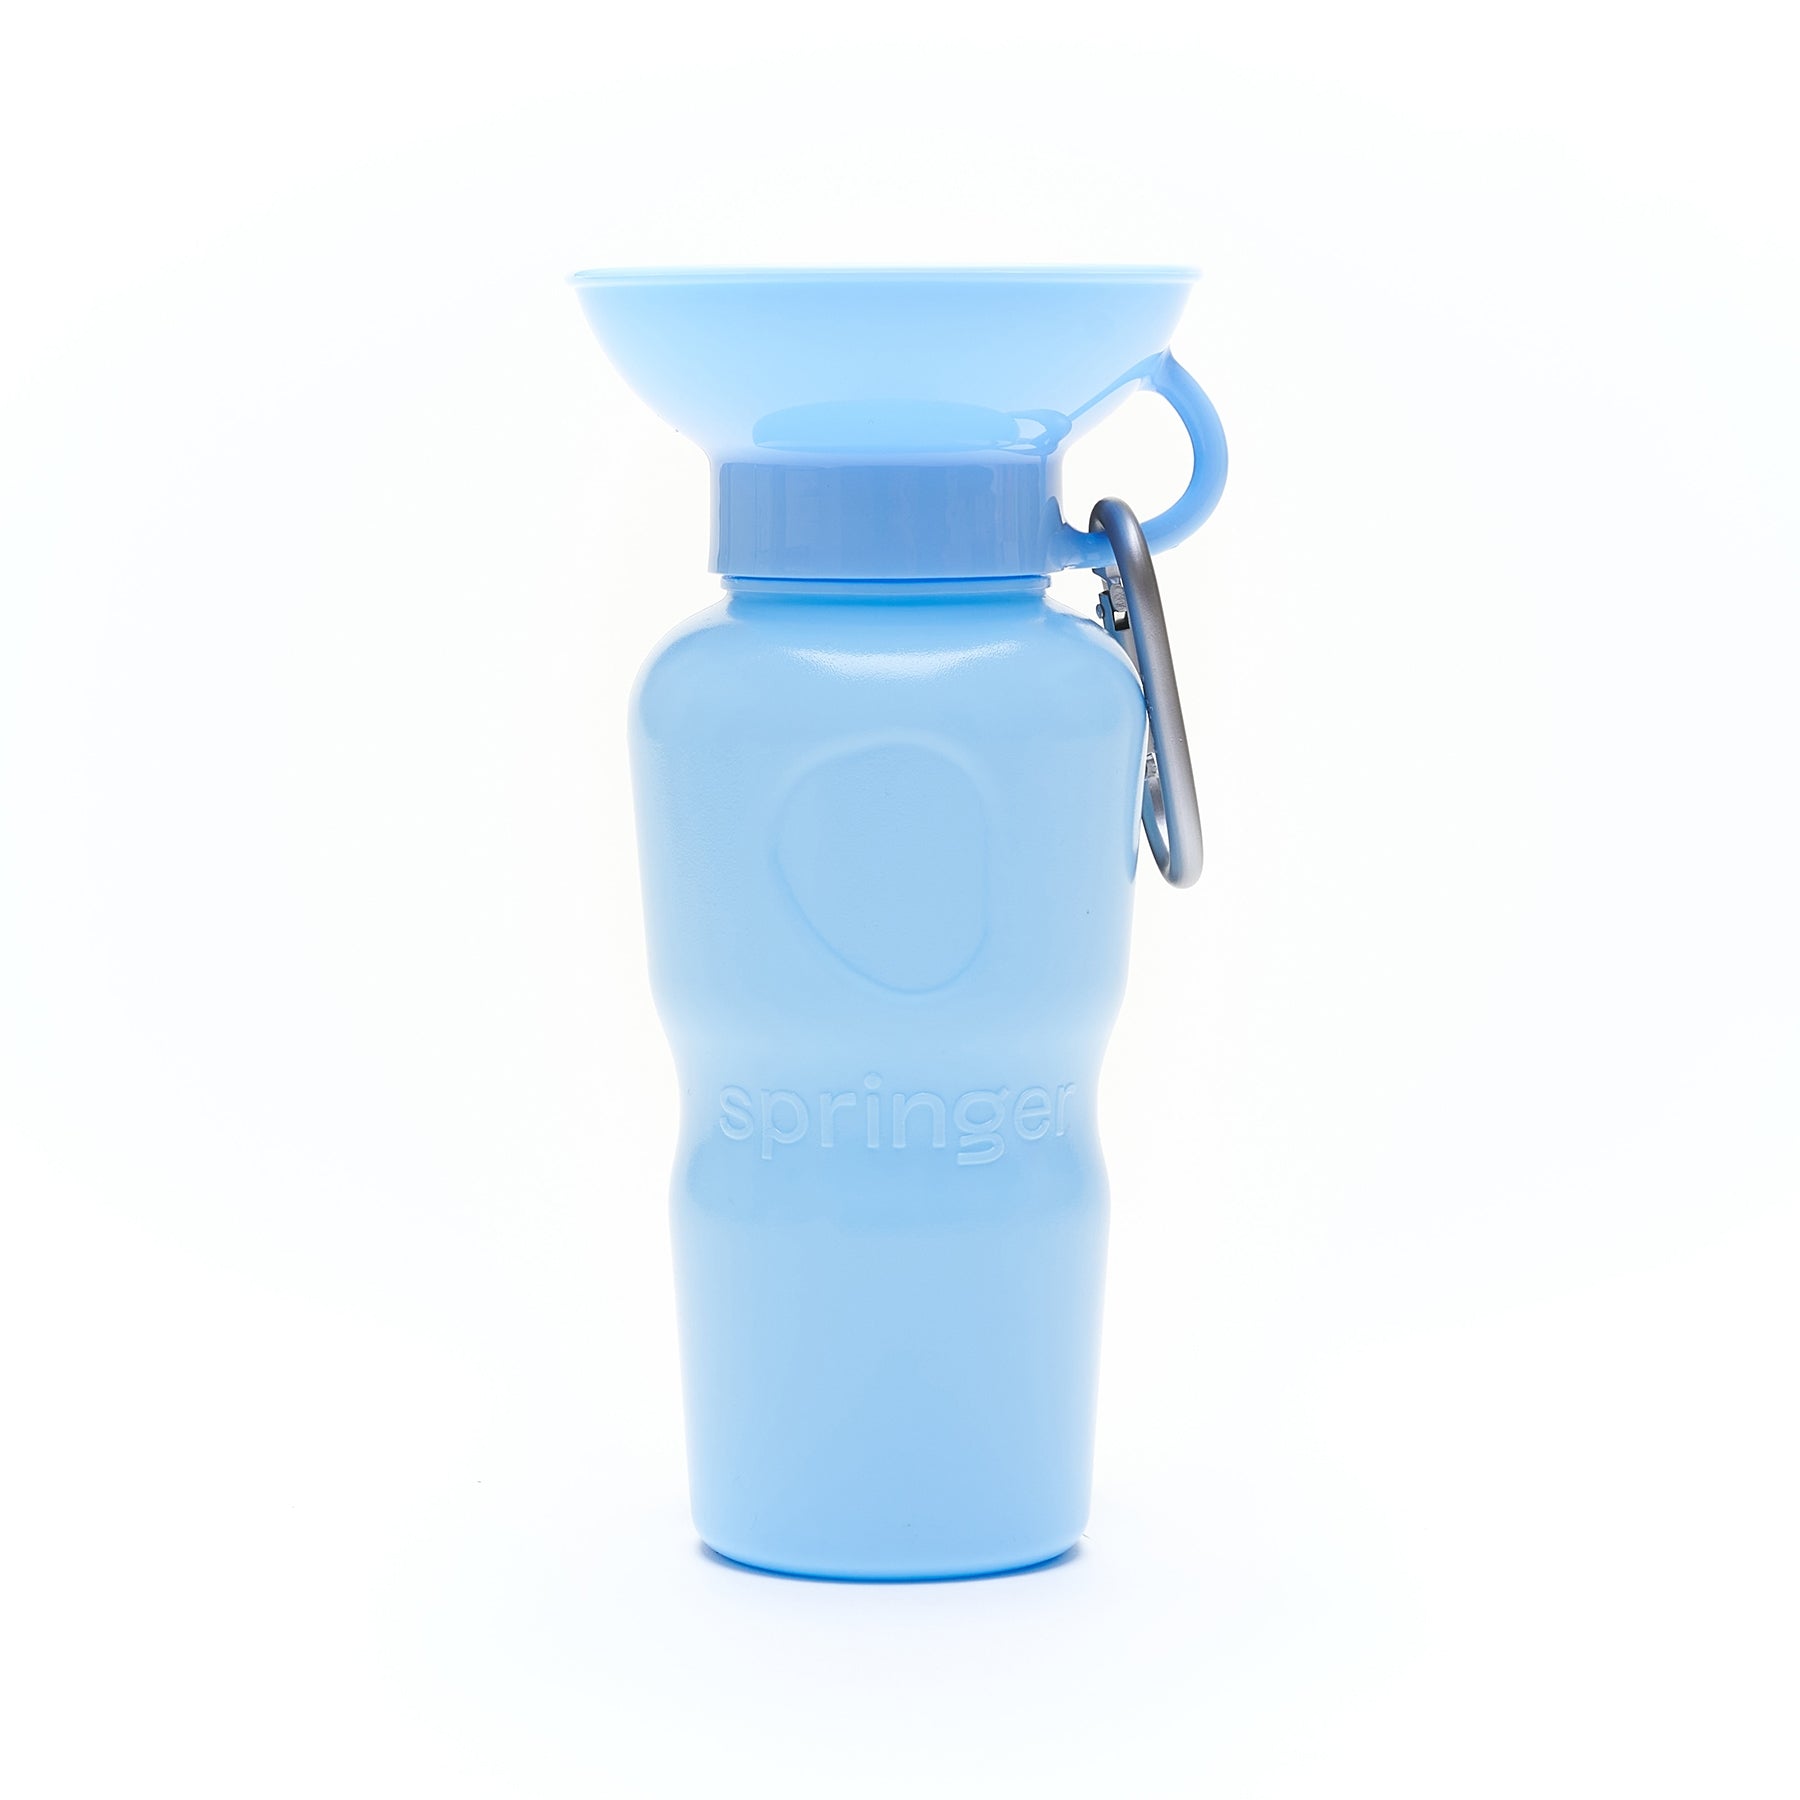 Springer Classic Travel Bottle, 22oz Sky Blue